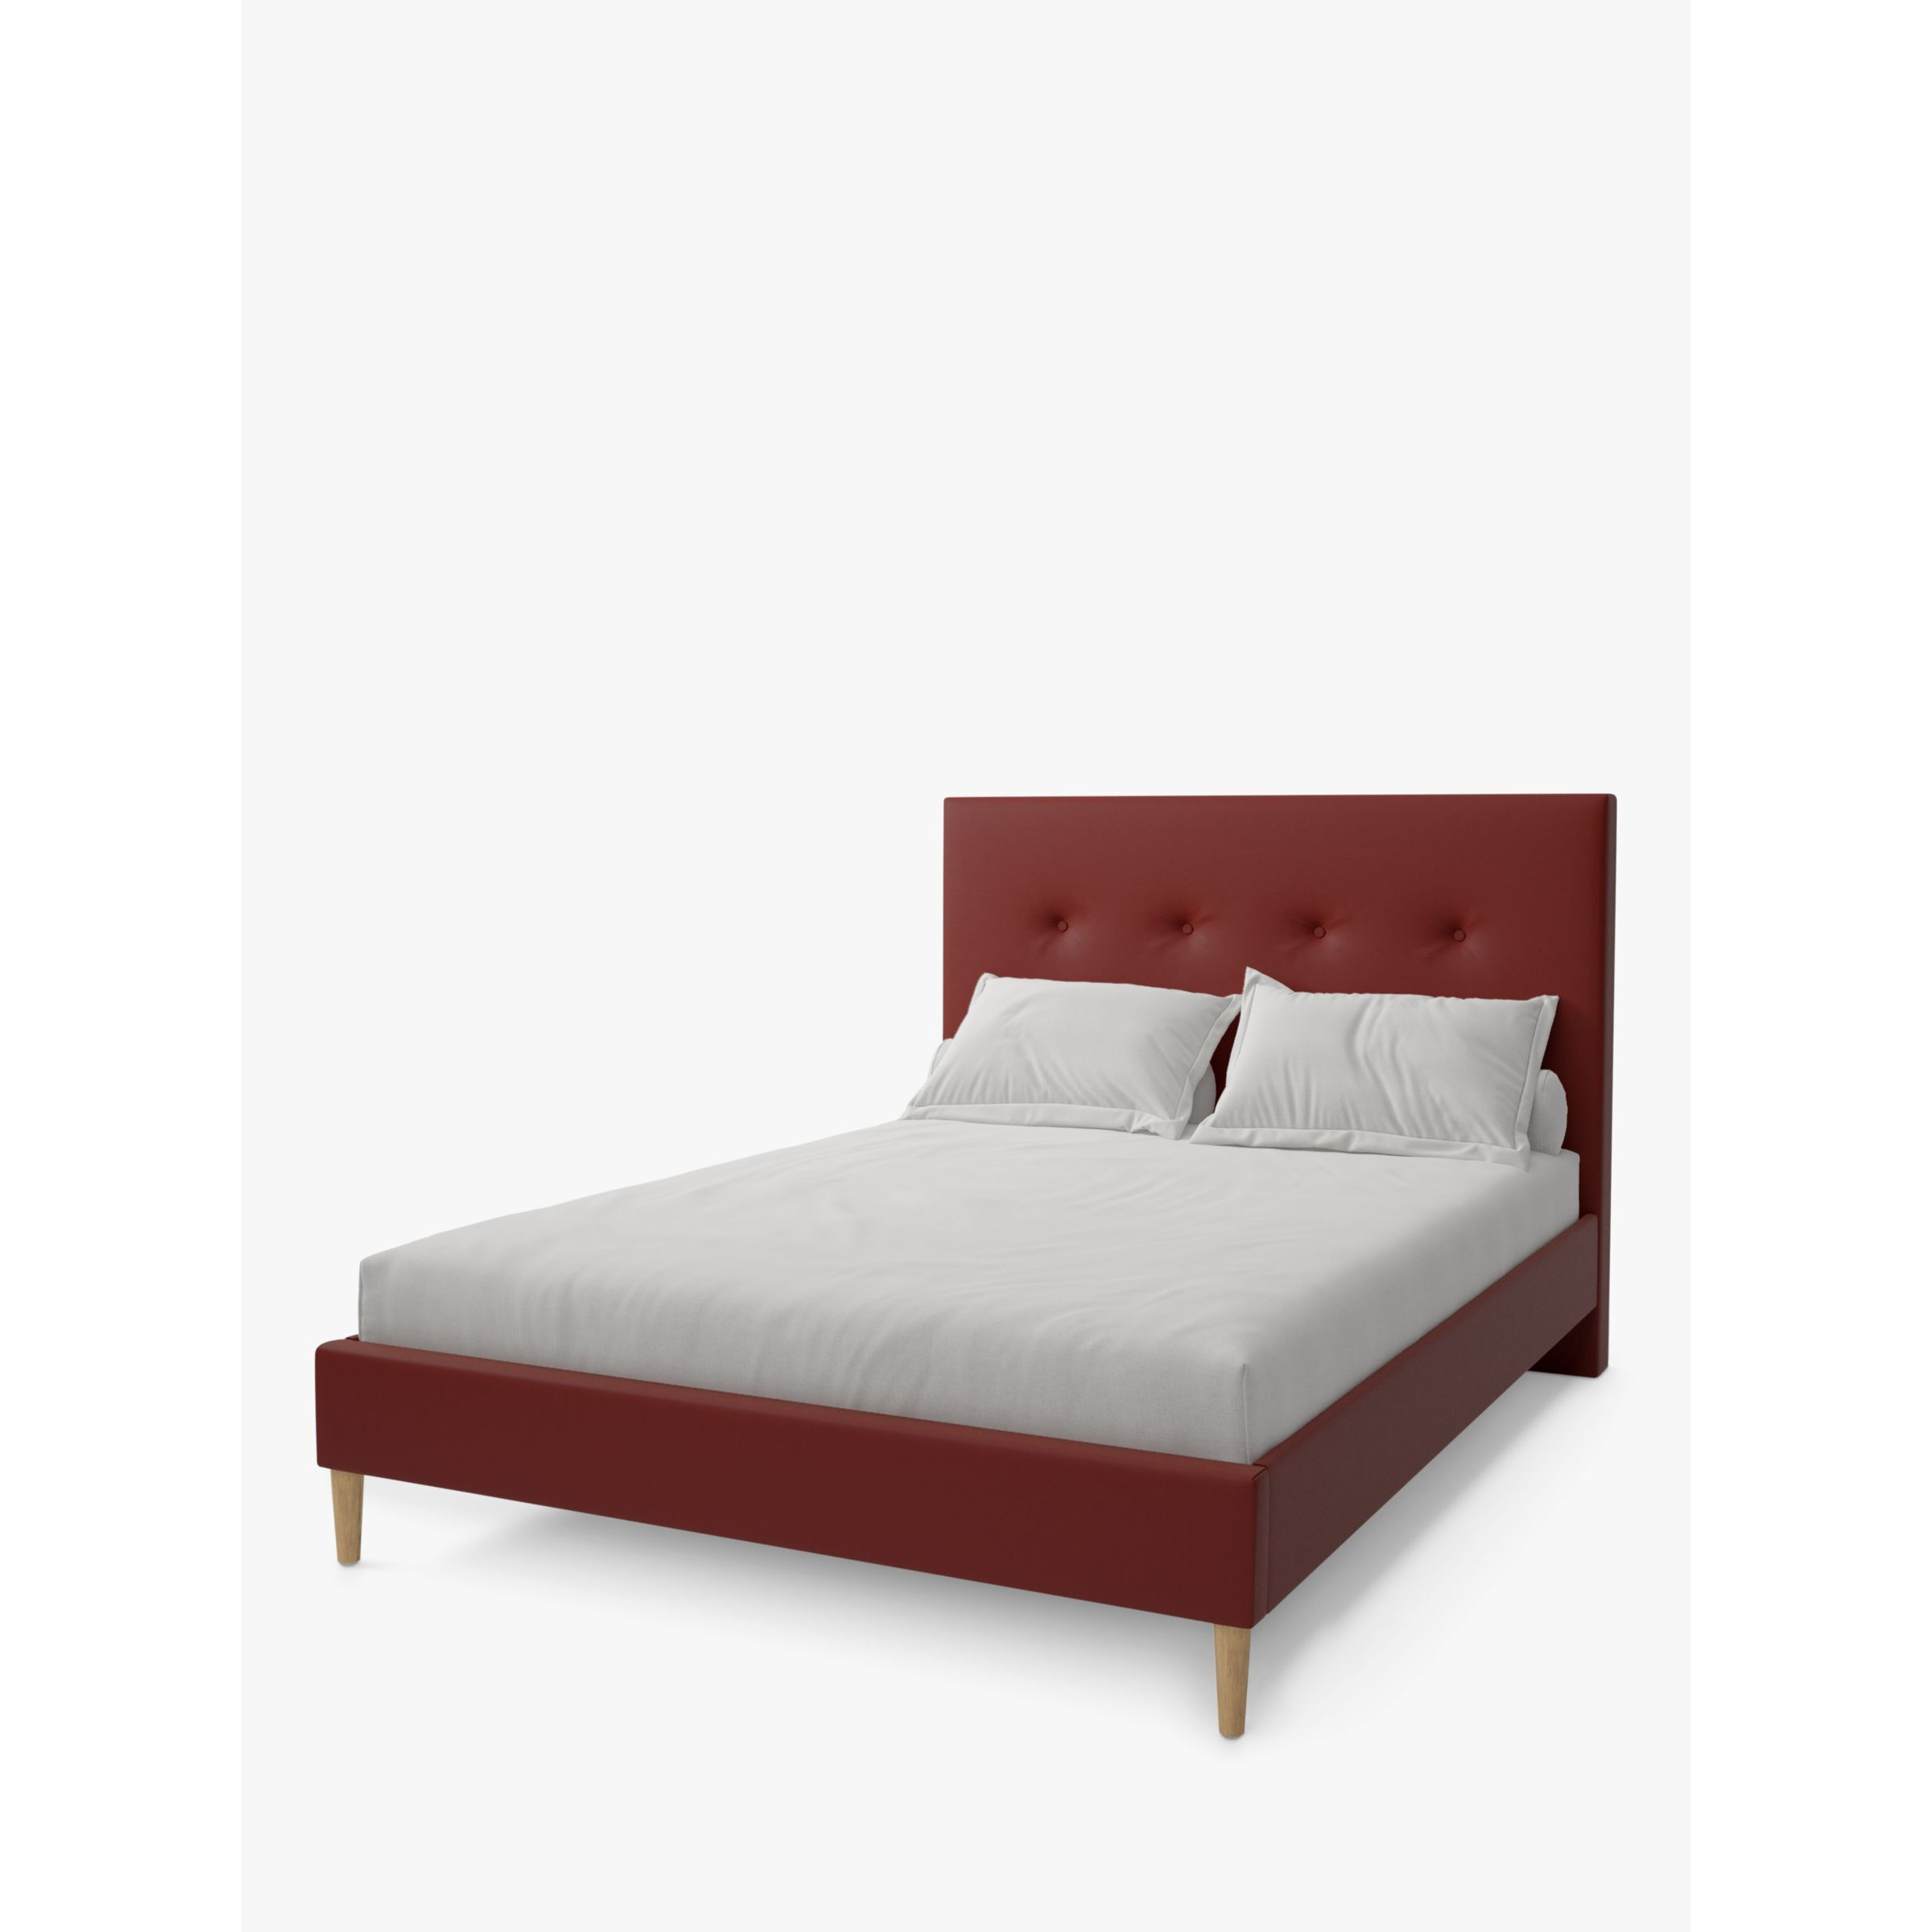 Koti Home Arun Upholstered Bed Frame, Super King Size - image 1